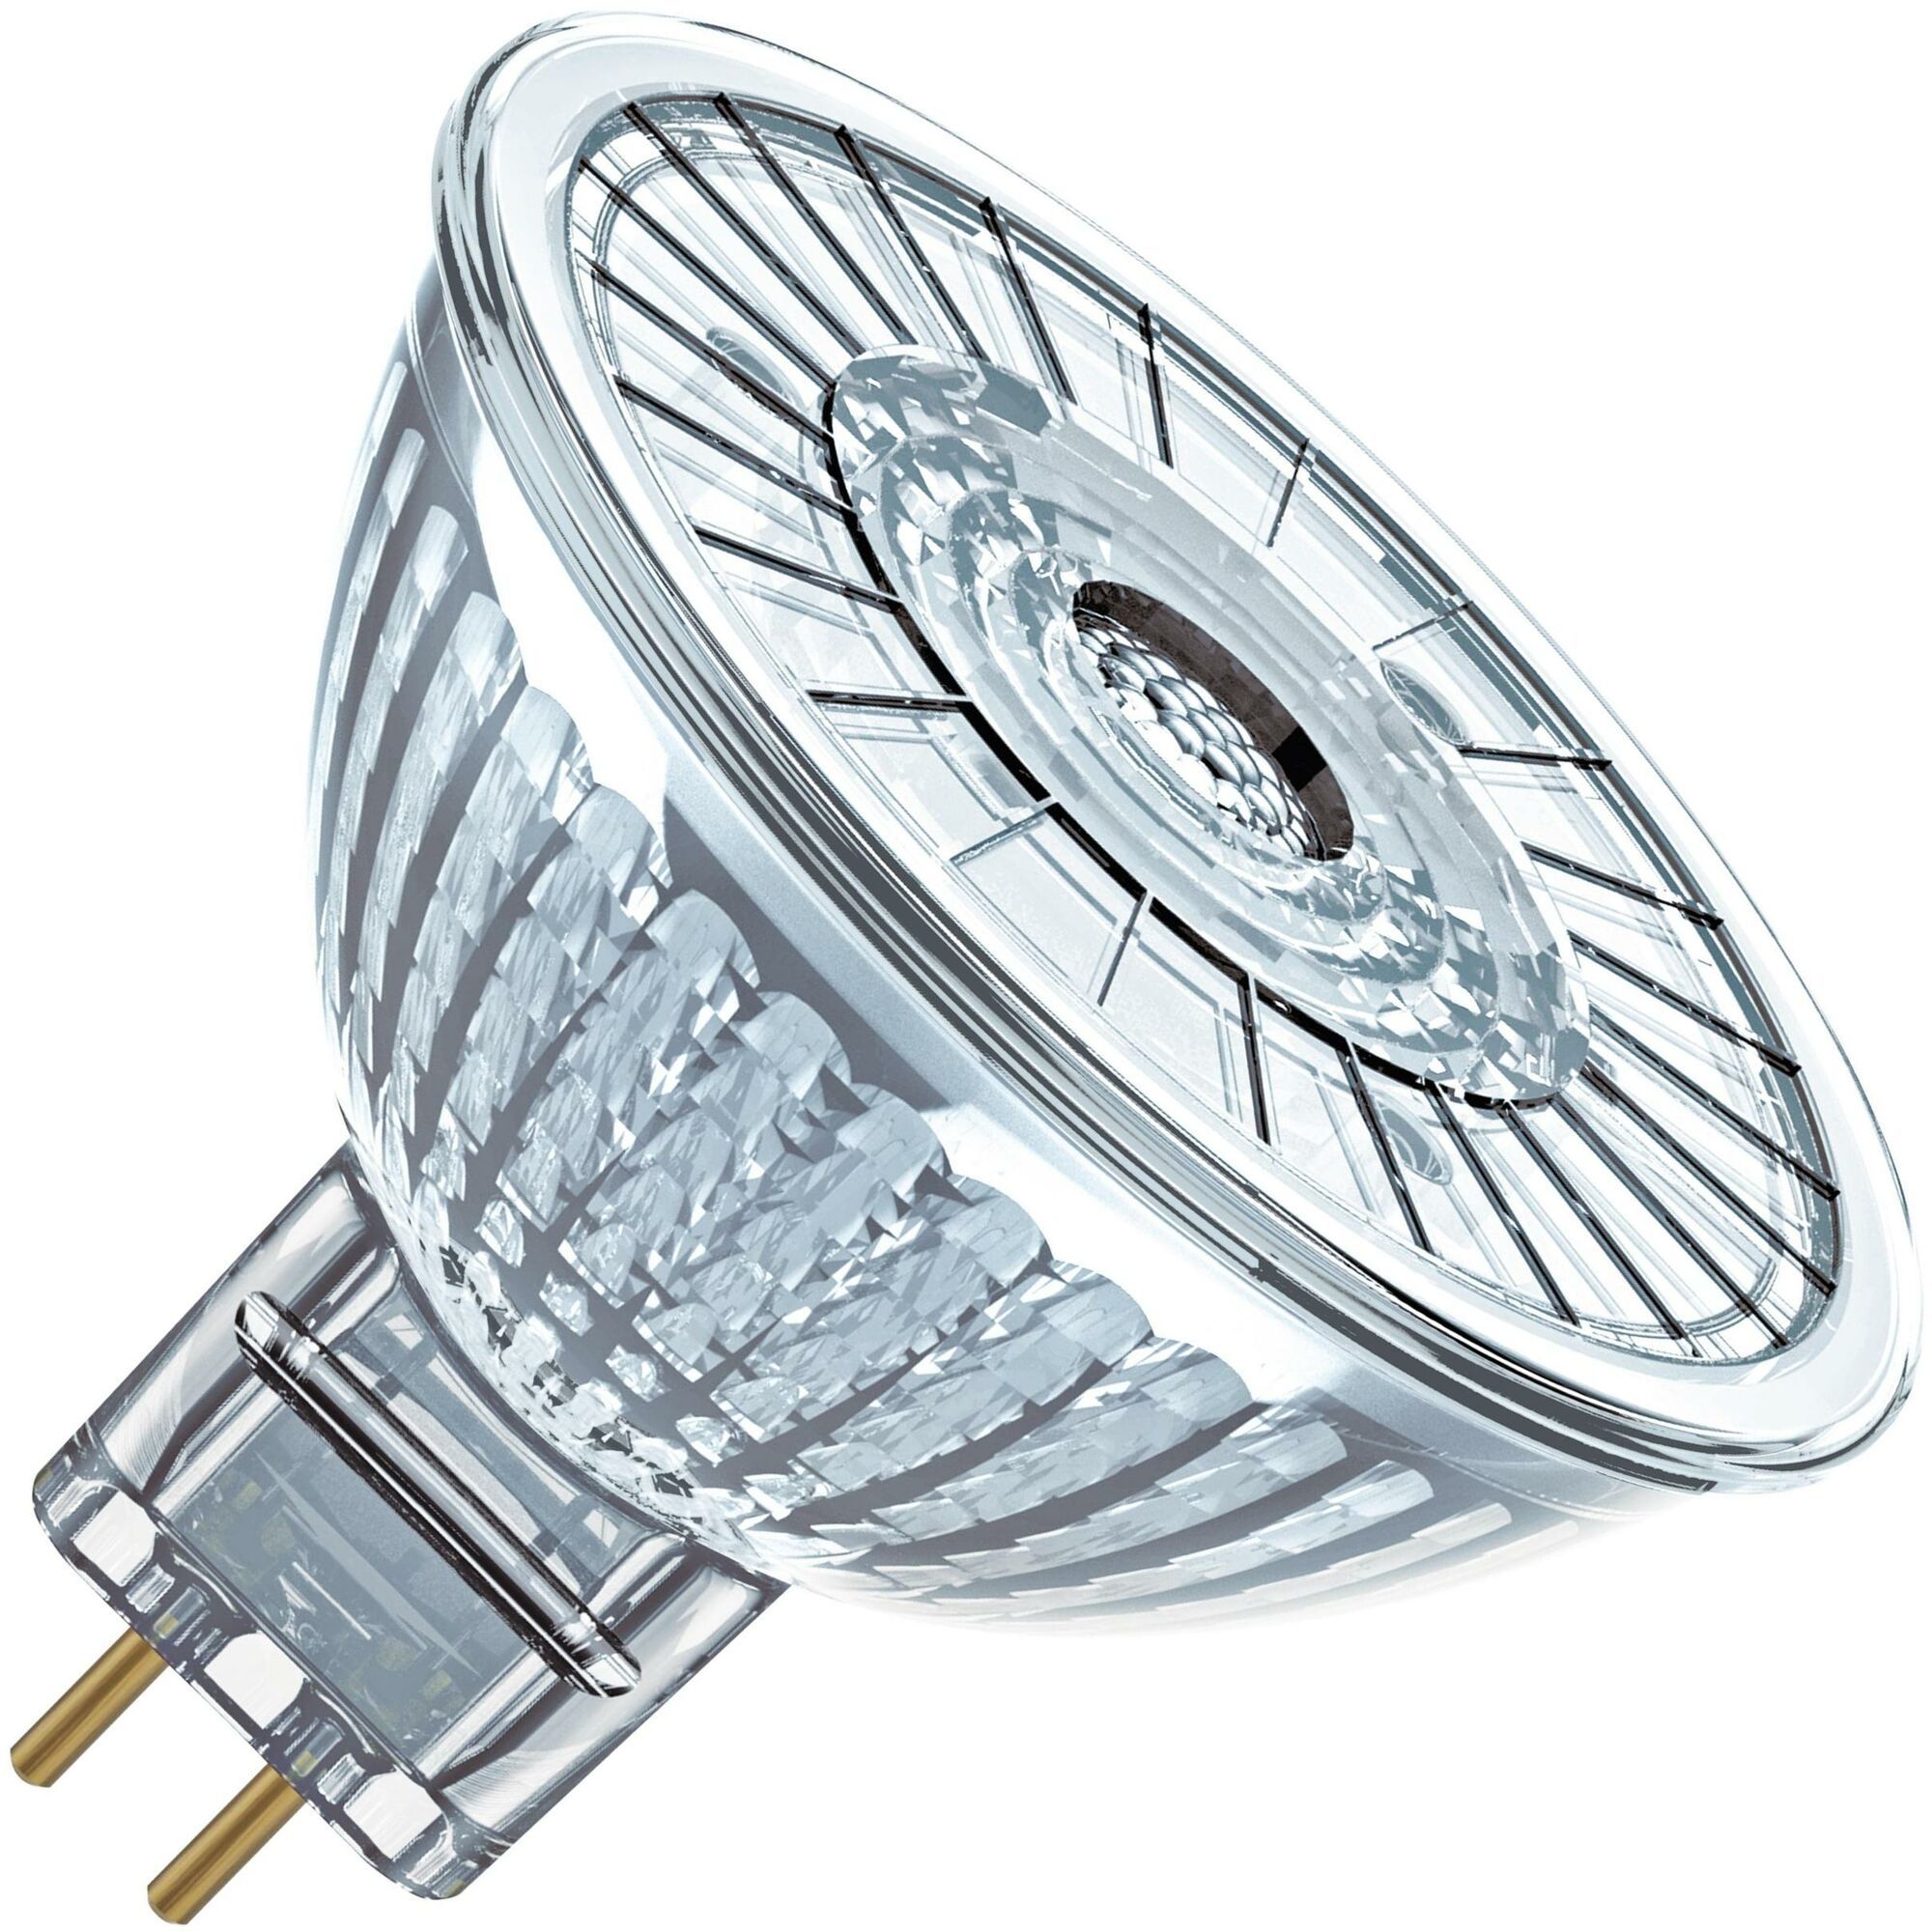 Gu 5.3 светодиодные 12v. Лампа светодиодная Osram led mr16. Лампа mr16 gu 5.3 (5w, 4000k). Светодиодная лампа 5w mr16. Лампа mr16 gu5.3 светодиодная 12 v.